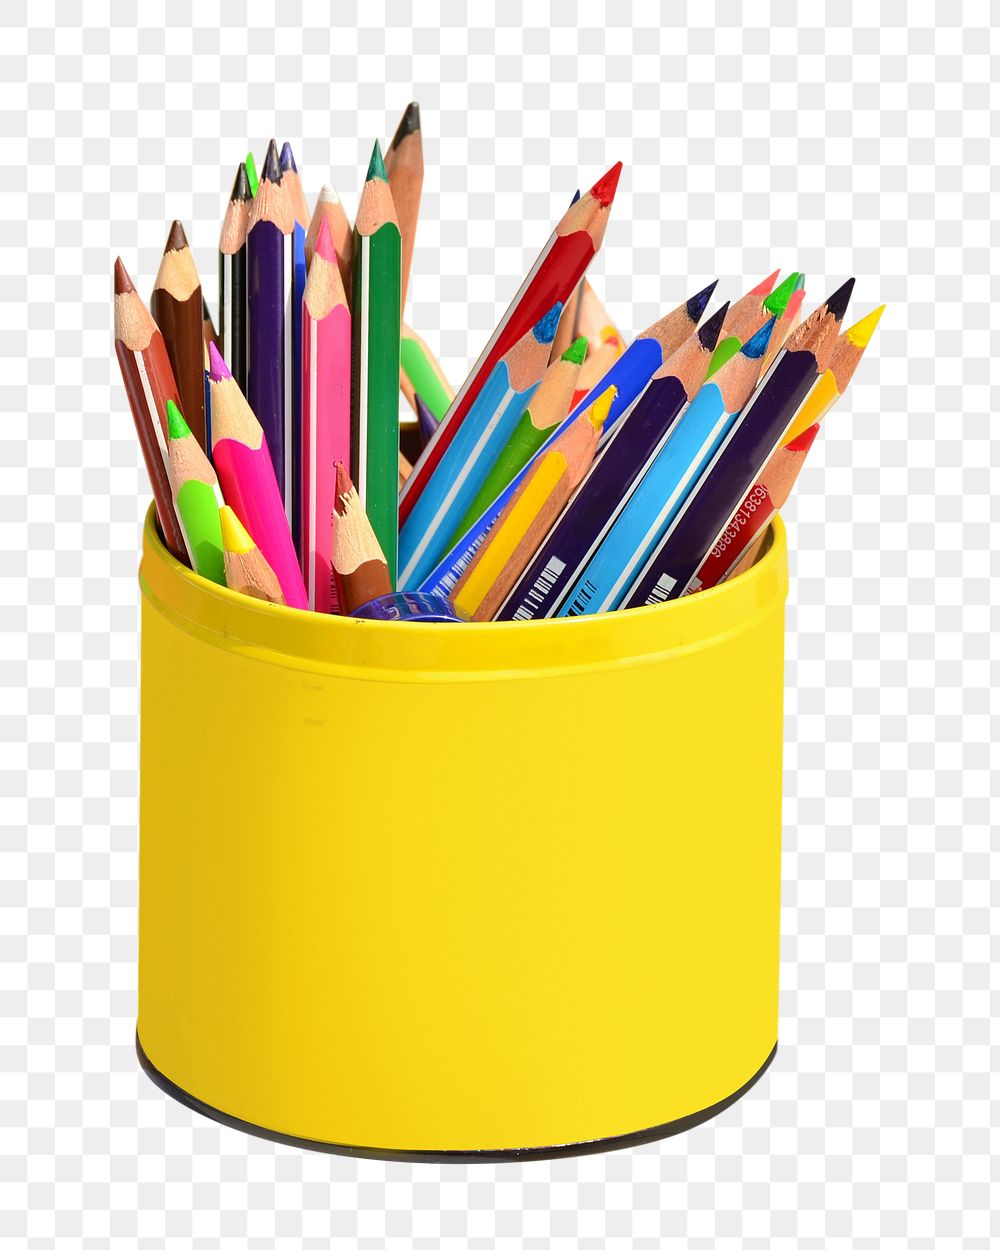 Color pencils png, transparent background